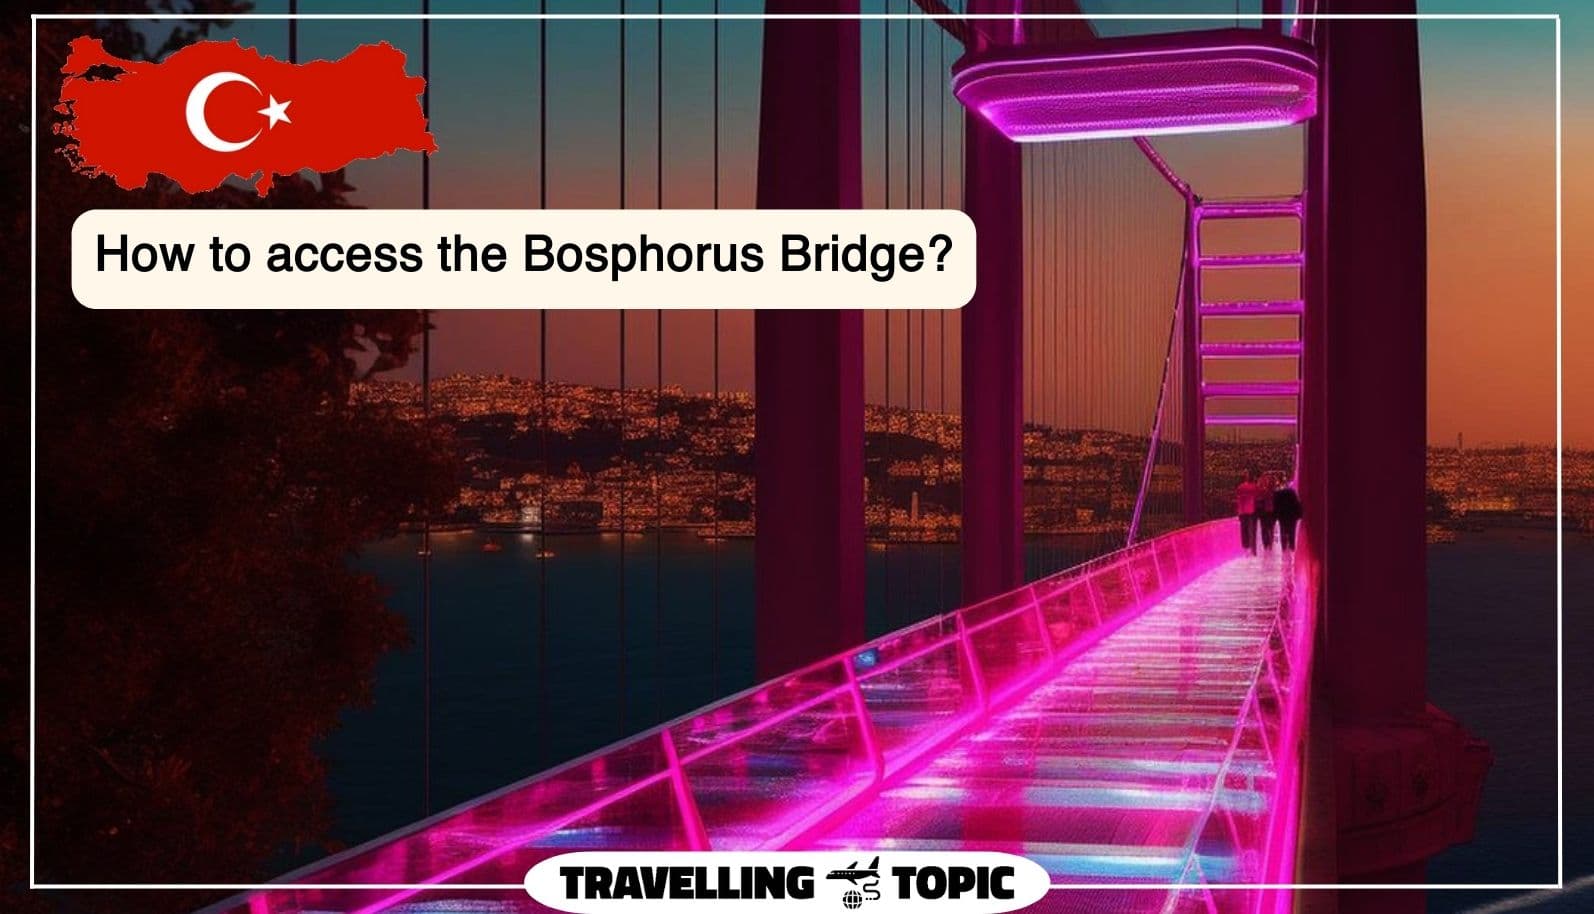 How to access the Bosphorus Bridge?